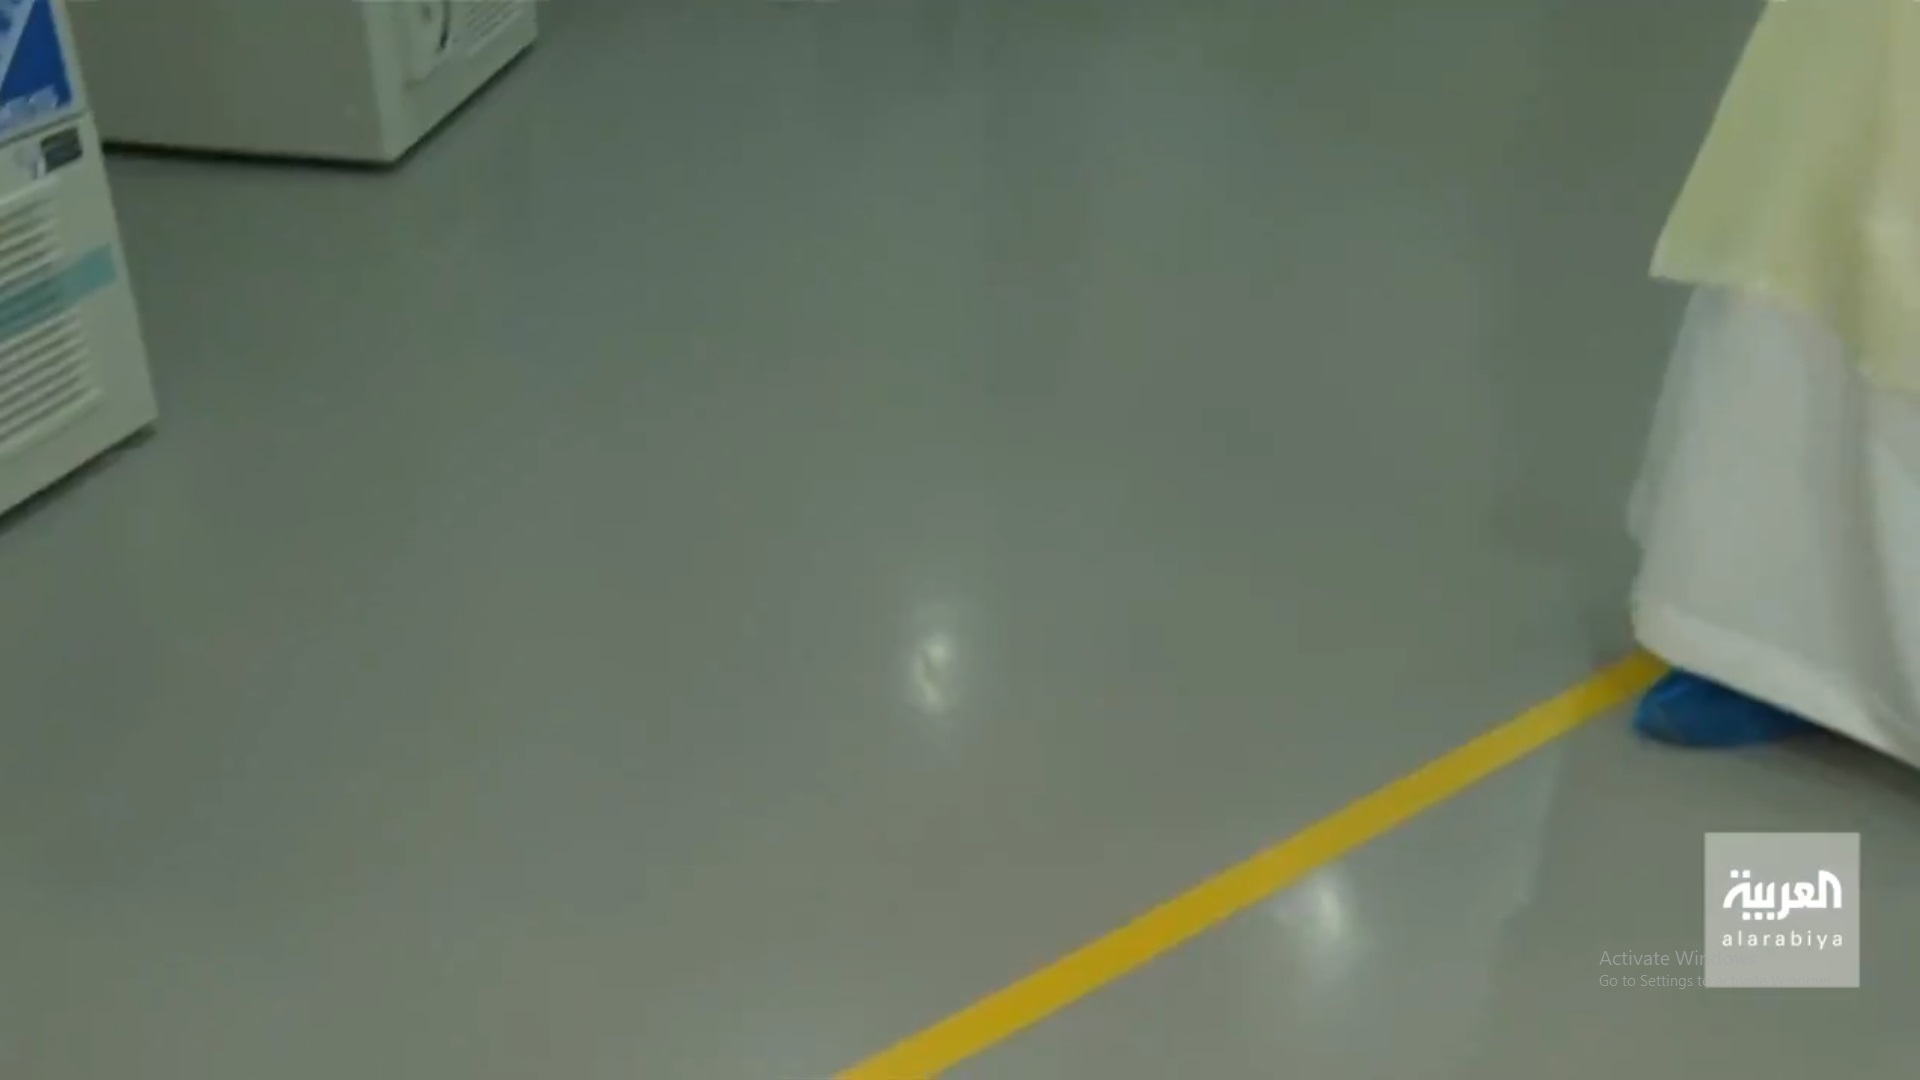 فيديو من داخل مركز حفظ اللقاحات في الرياض وهذا سبب الخط الأصفر